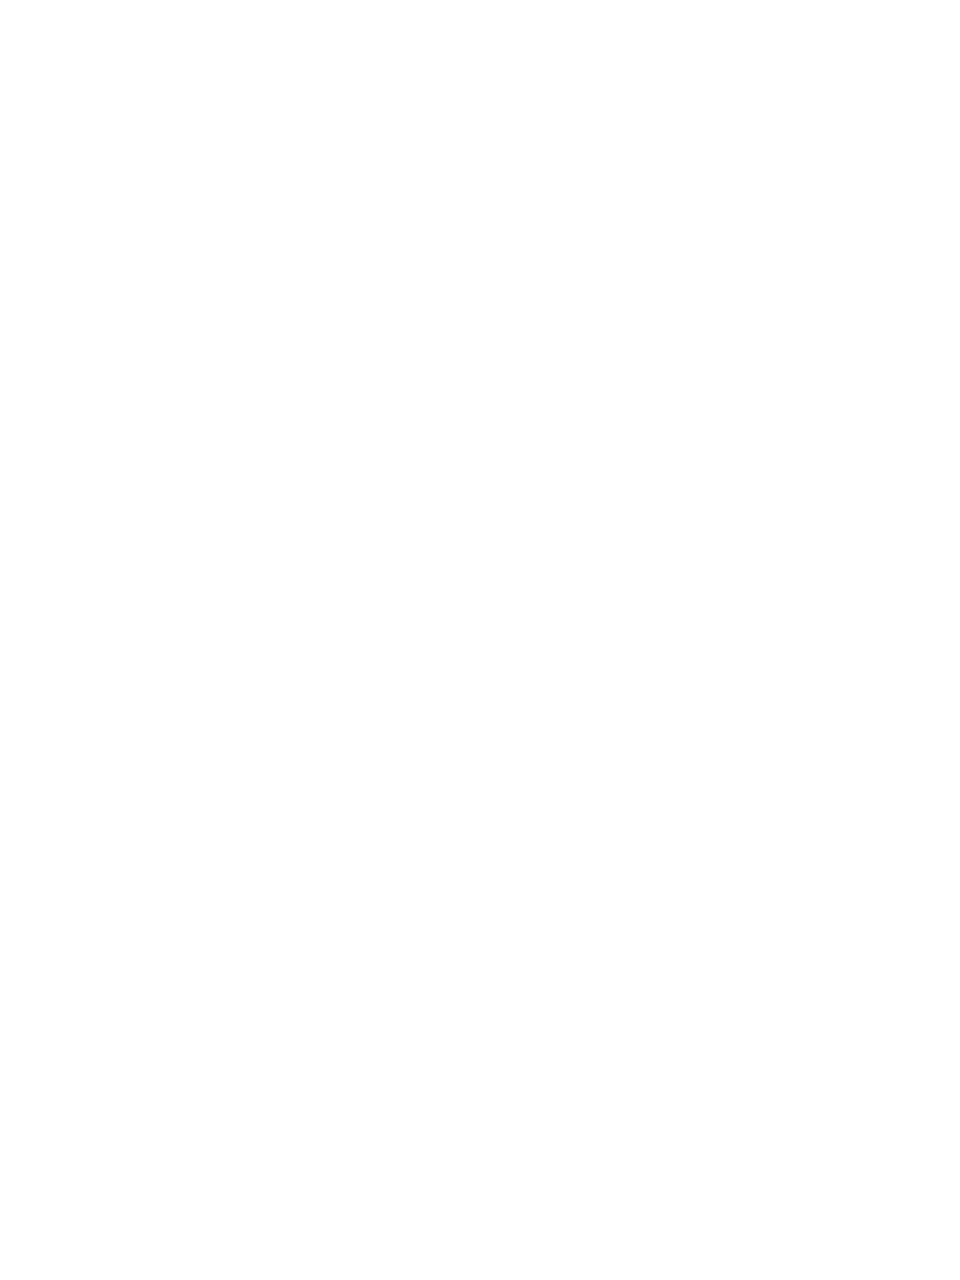 Белый классический барельеф с начальными буквами хозяек - комнаты двух сестренок